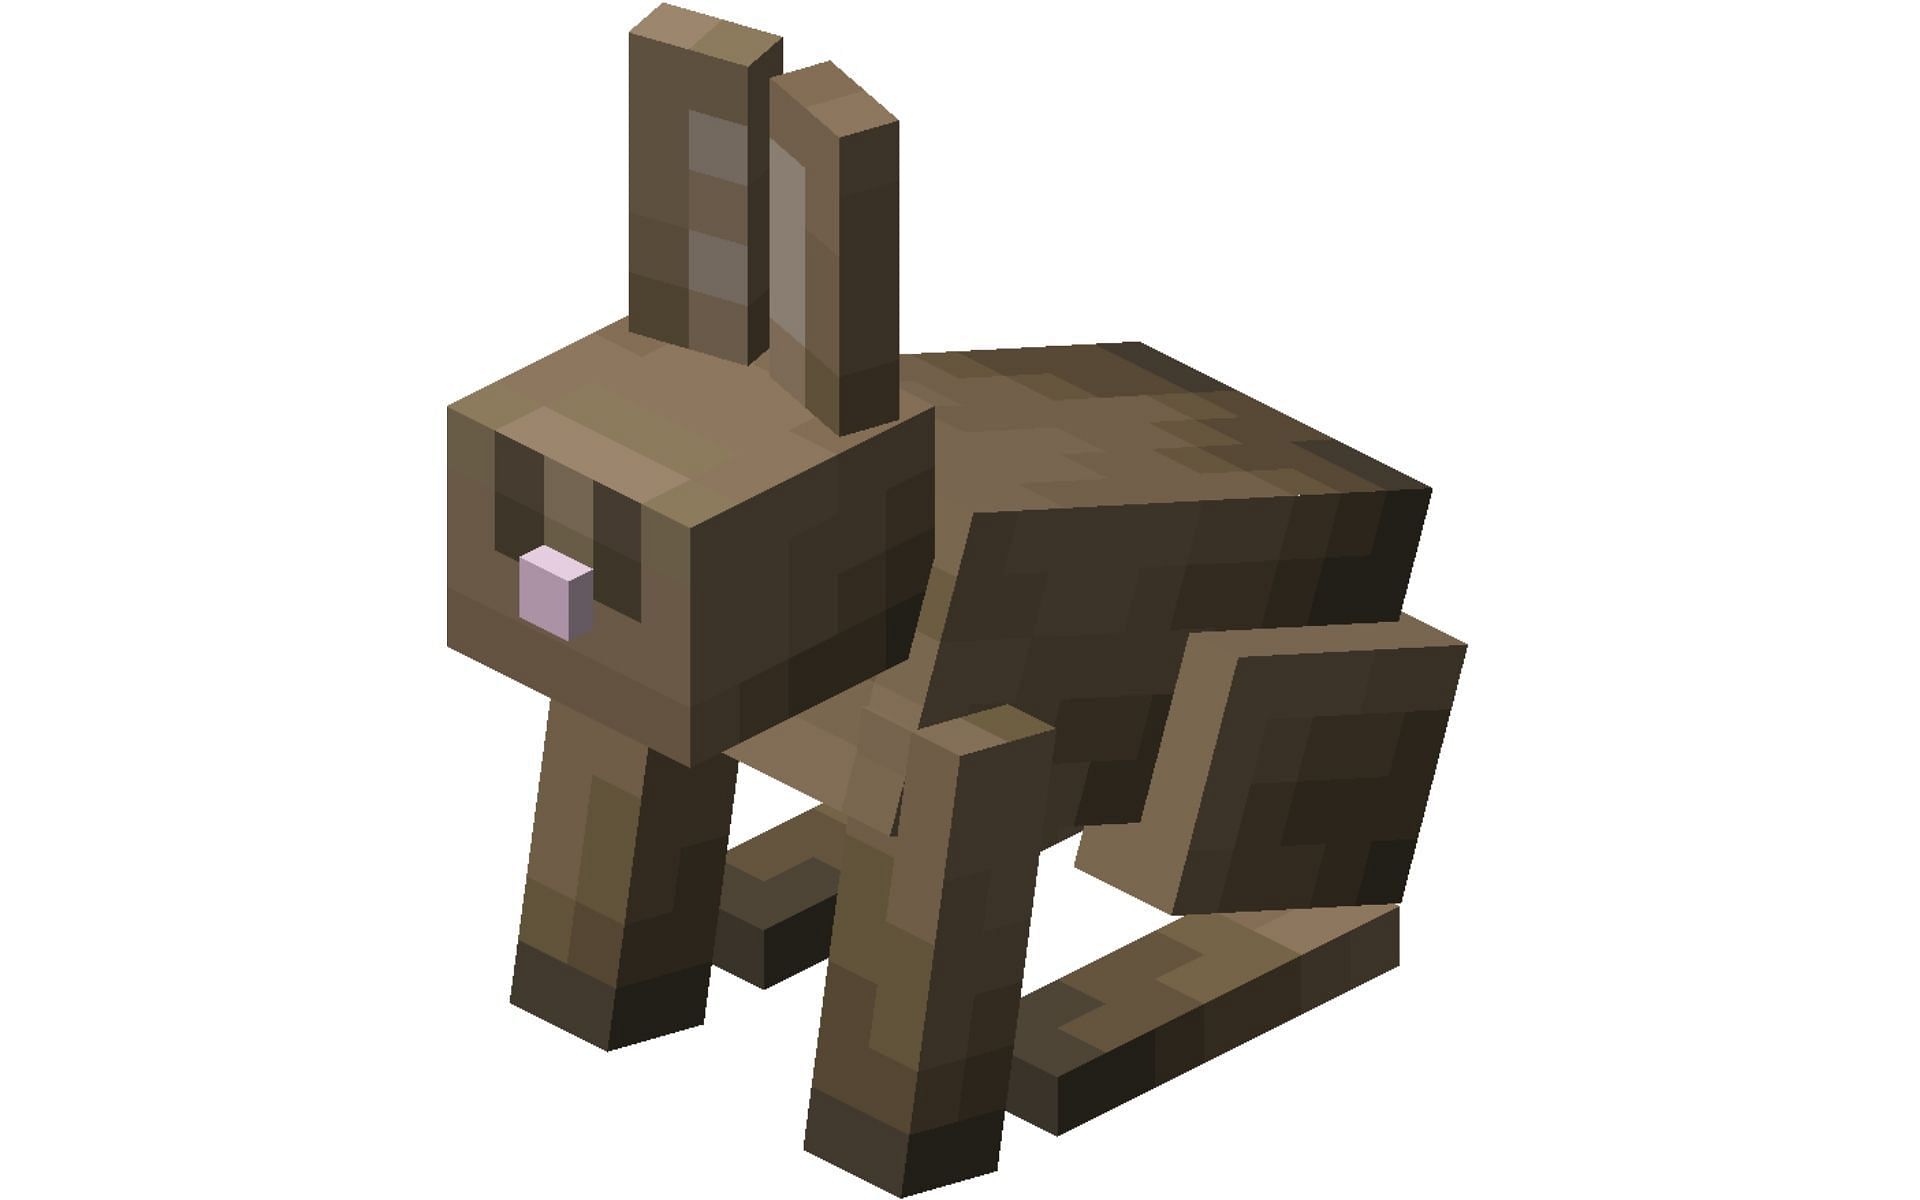 In-game model of the Rabbit (Image via Fandom)